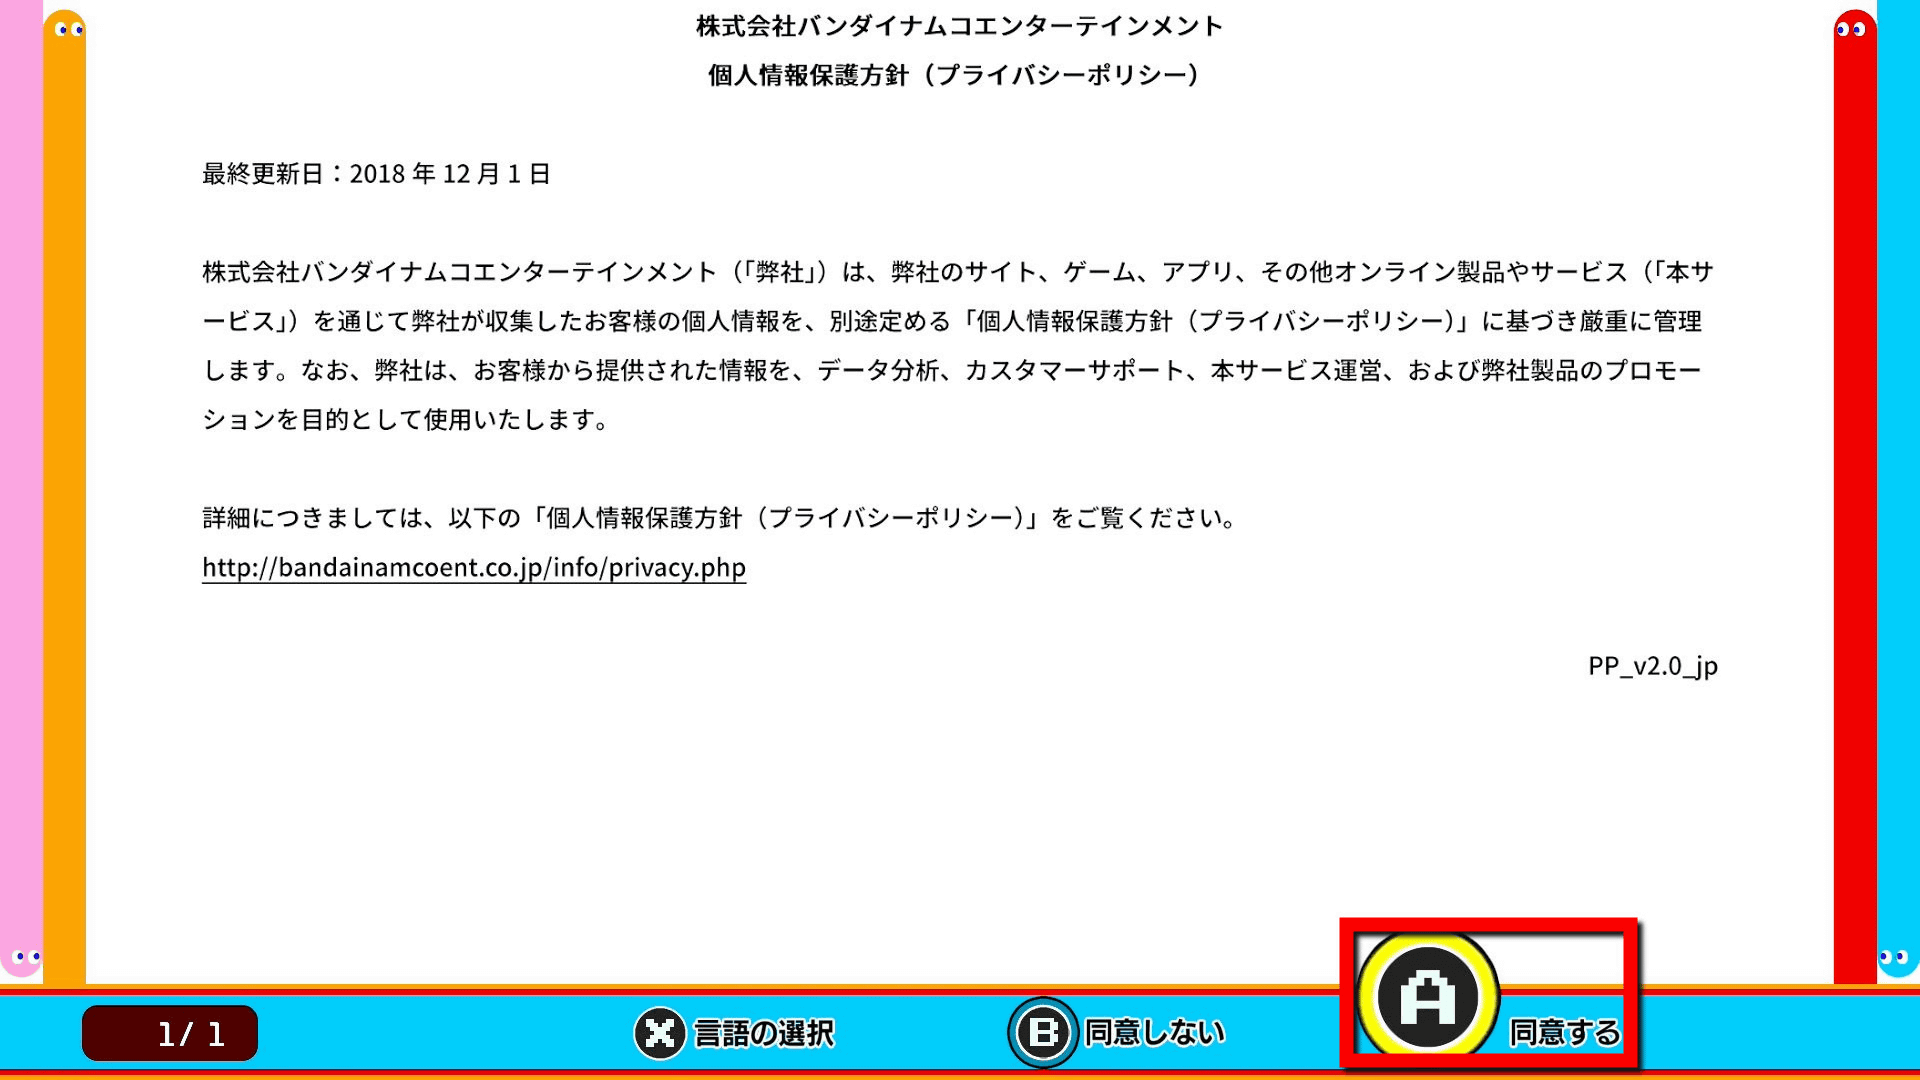 PAC-MAN 99  バンダイナムコエンターテインメント公式サイト